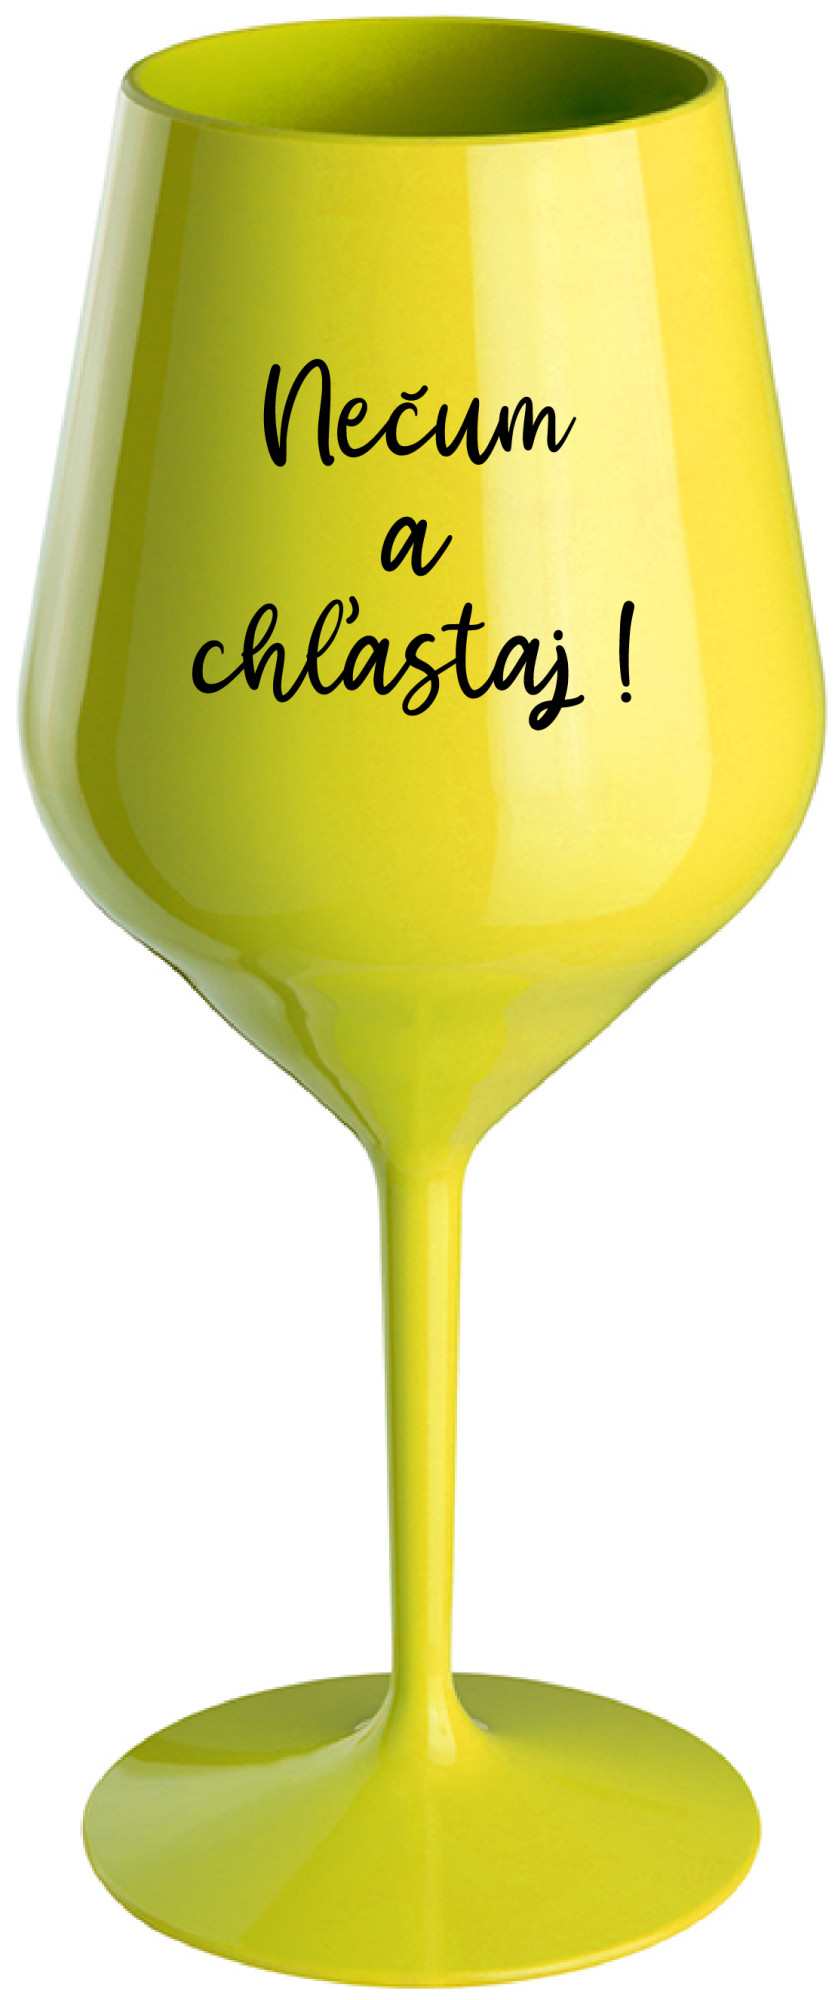 NEČUM A CHĽASTAJ! - žlutá nerozbitná sklenice na víno 470 ml